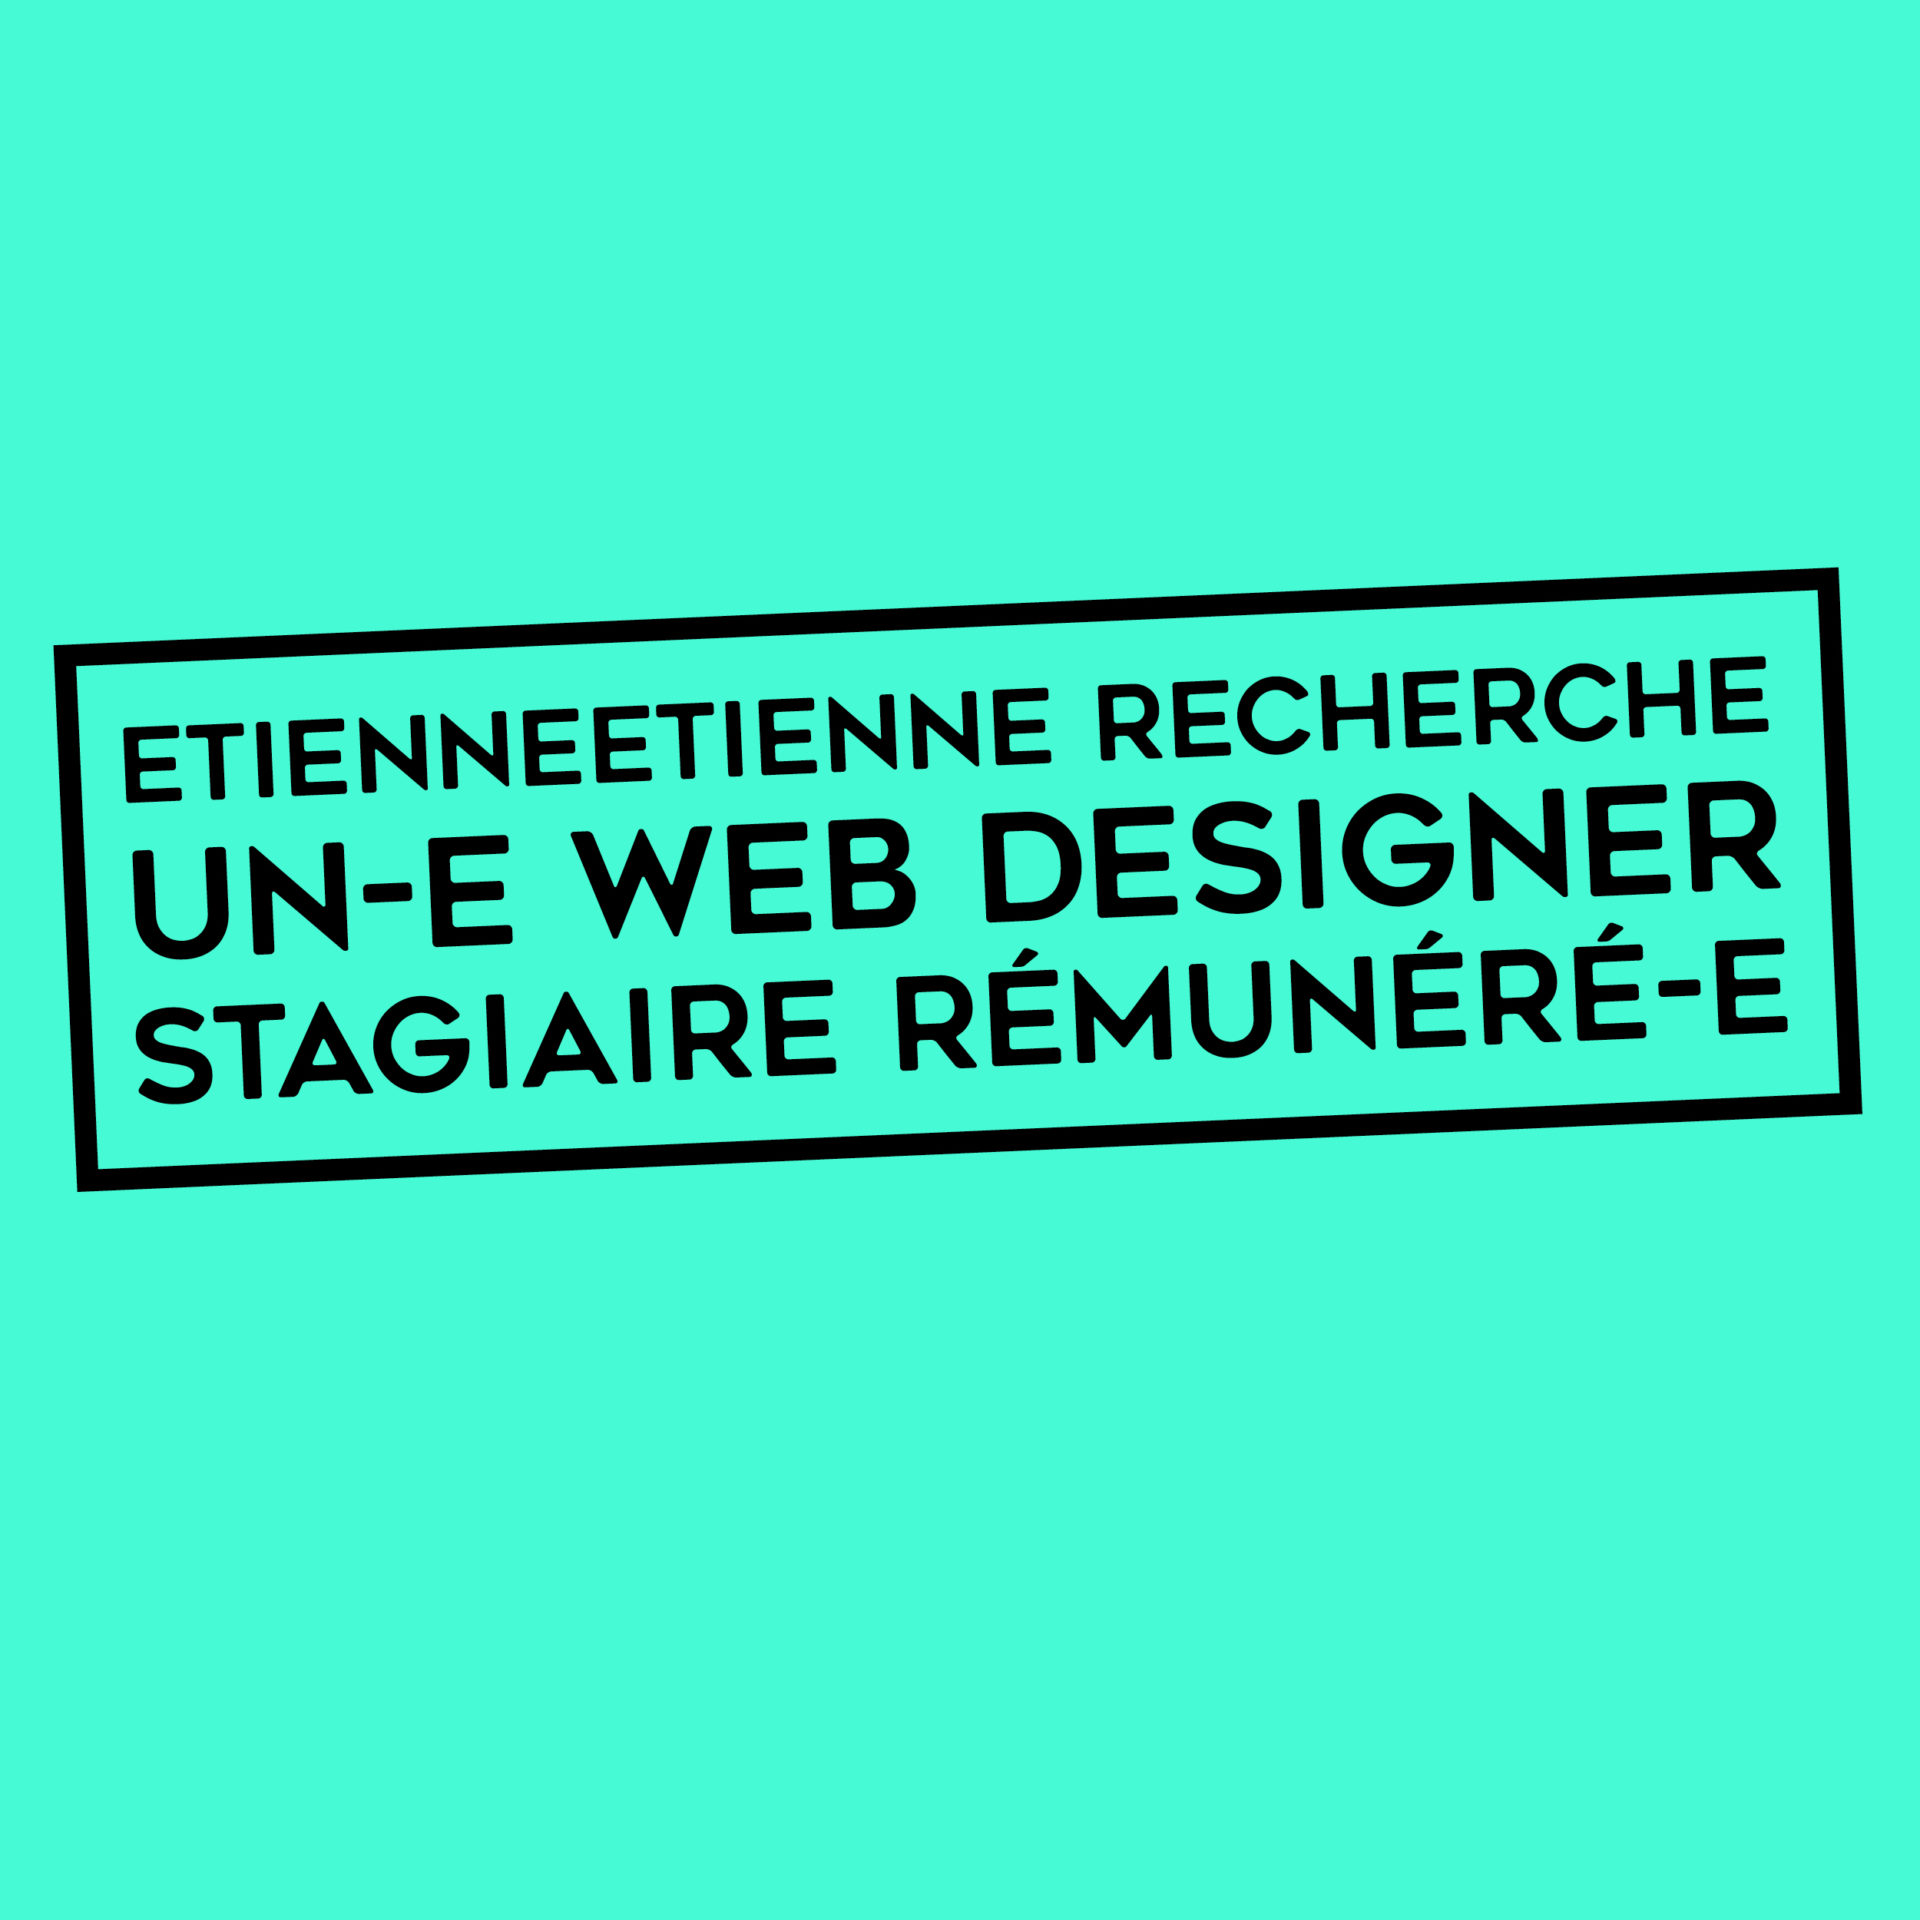 #STAGE #URGENT– EtienneEtienne recherche un-e Web Designer stagiaire rémunéré-e